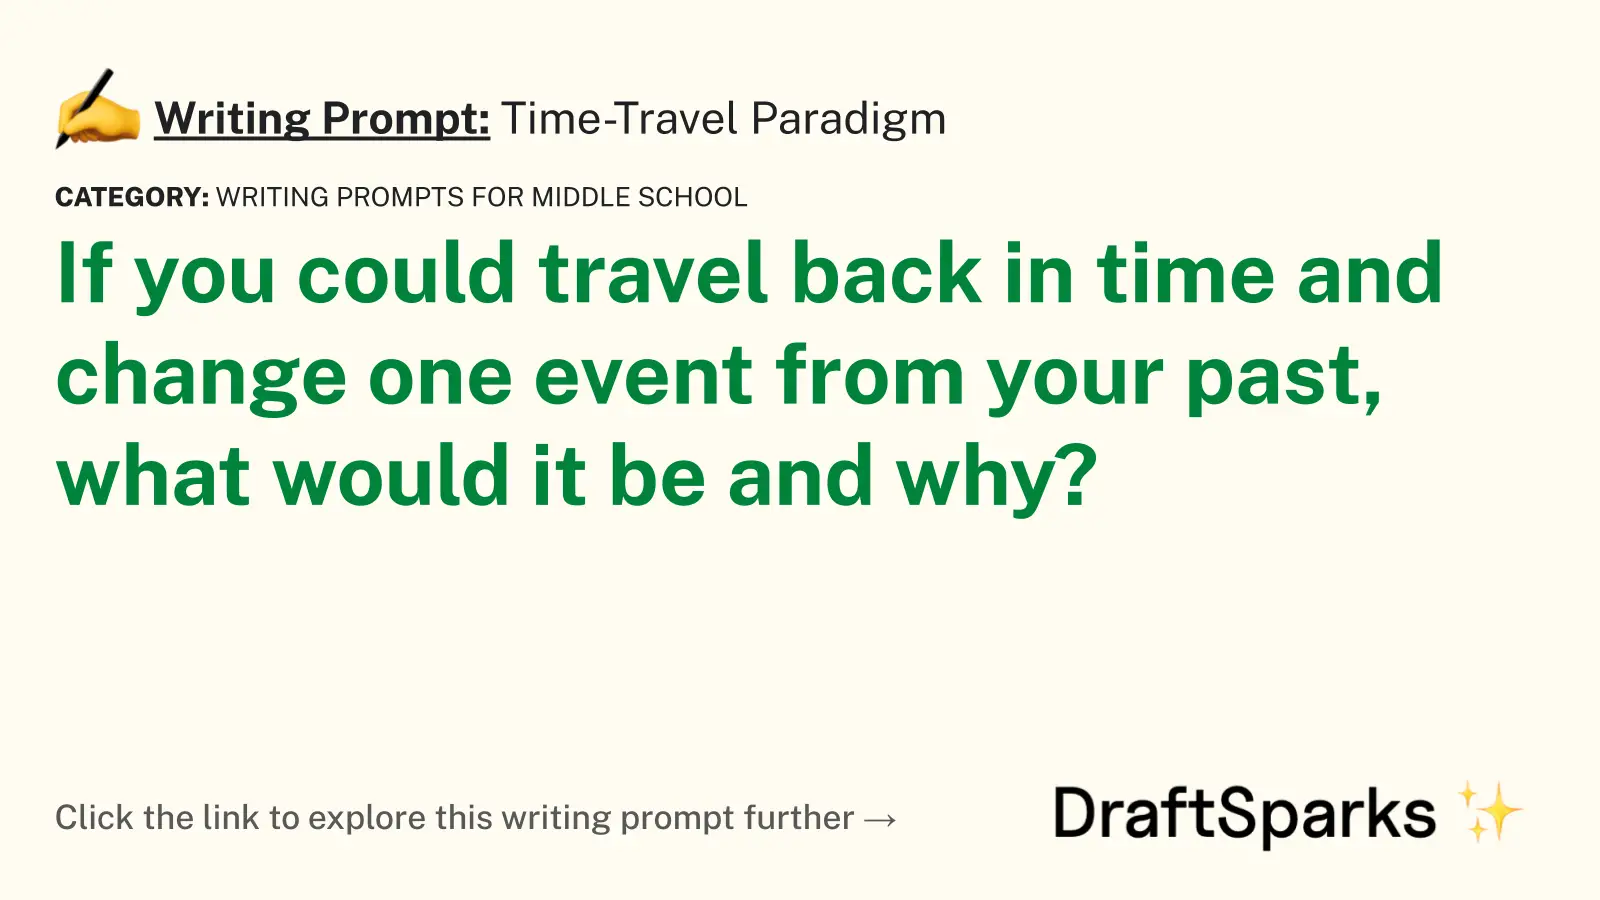 Time-Travel Paradigm